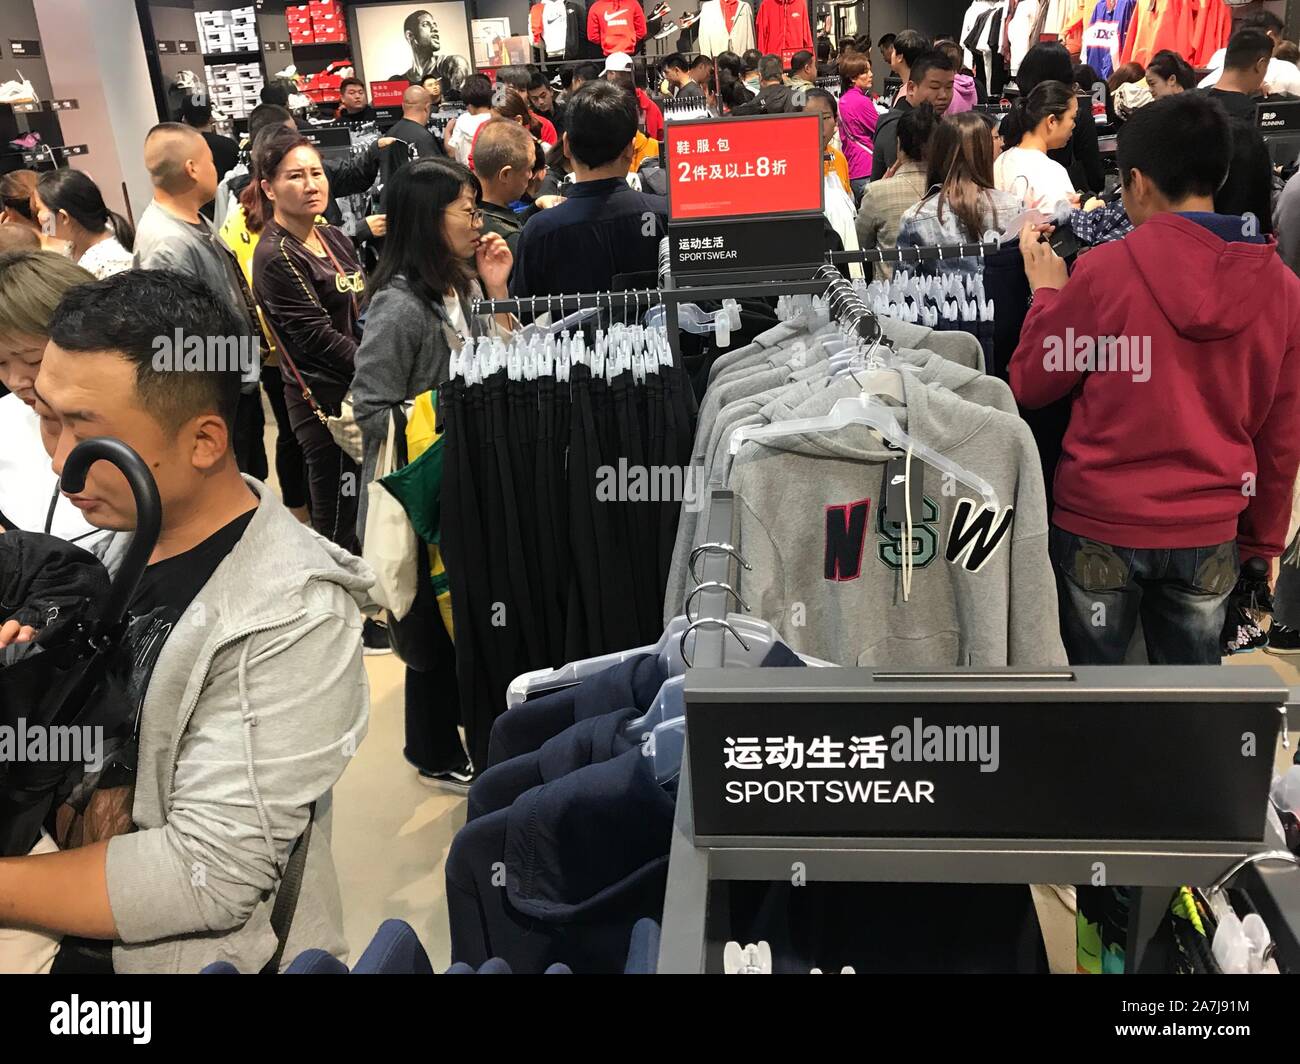 Les consommateurs à choisir et acheter des produits à un magasin Nike à la  vente d'immobilisations récemment ouvert dans la ville de Xi'an, province  du Shaanxi du nord-ouest de la Chine, 14